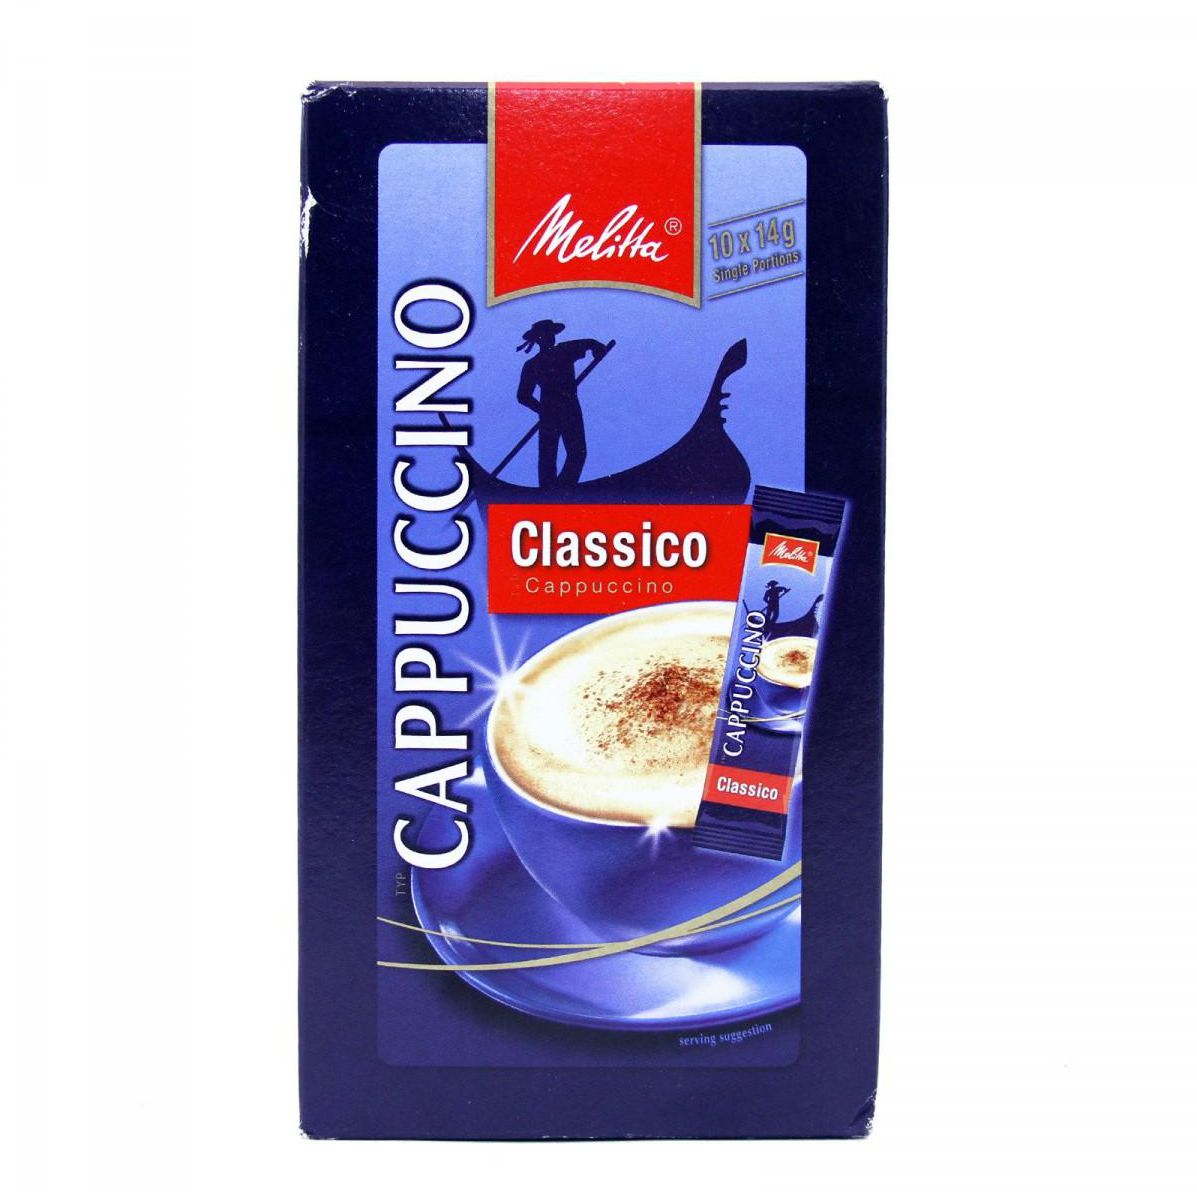 Melitta Classico Cappuccino 10X14g